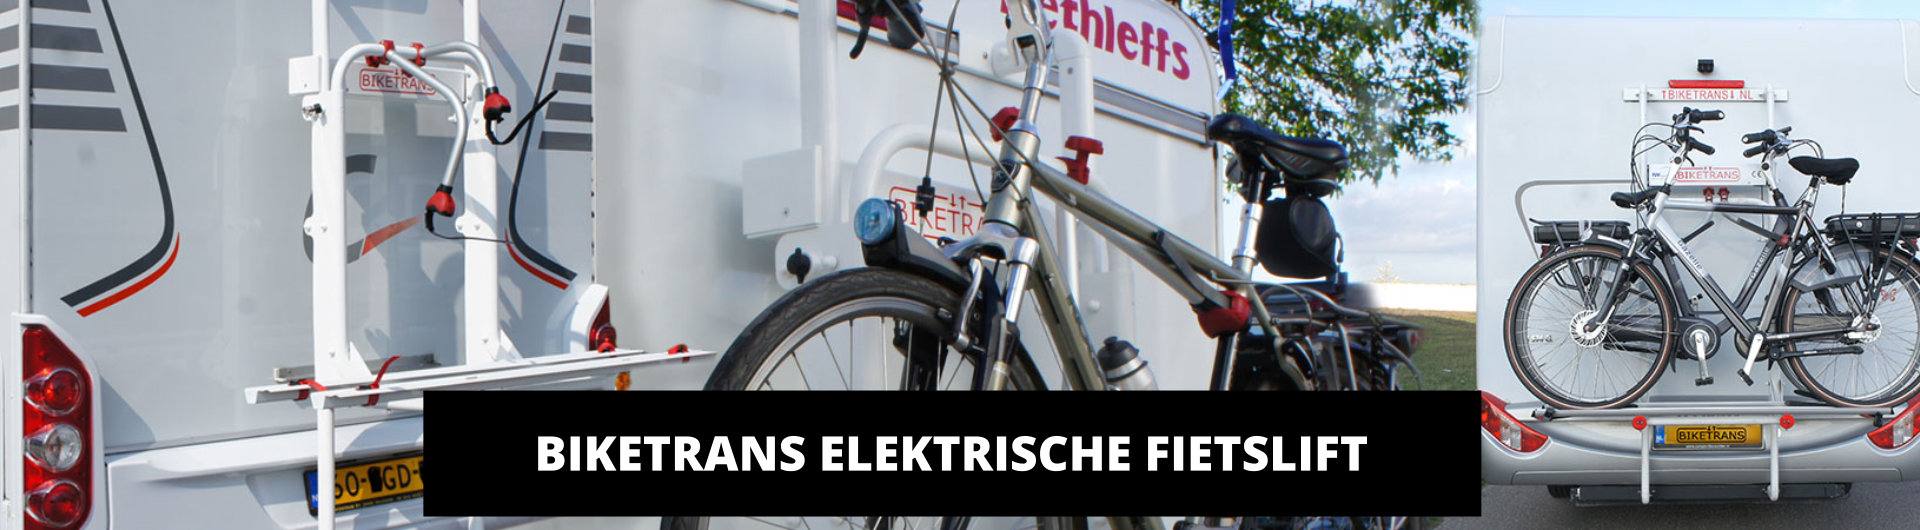 biketrans elektrische fietslift